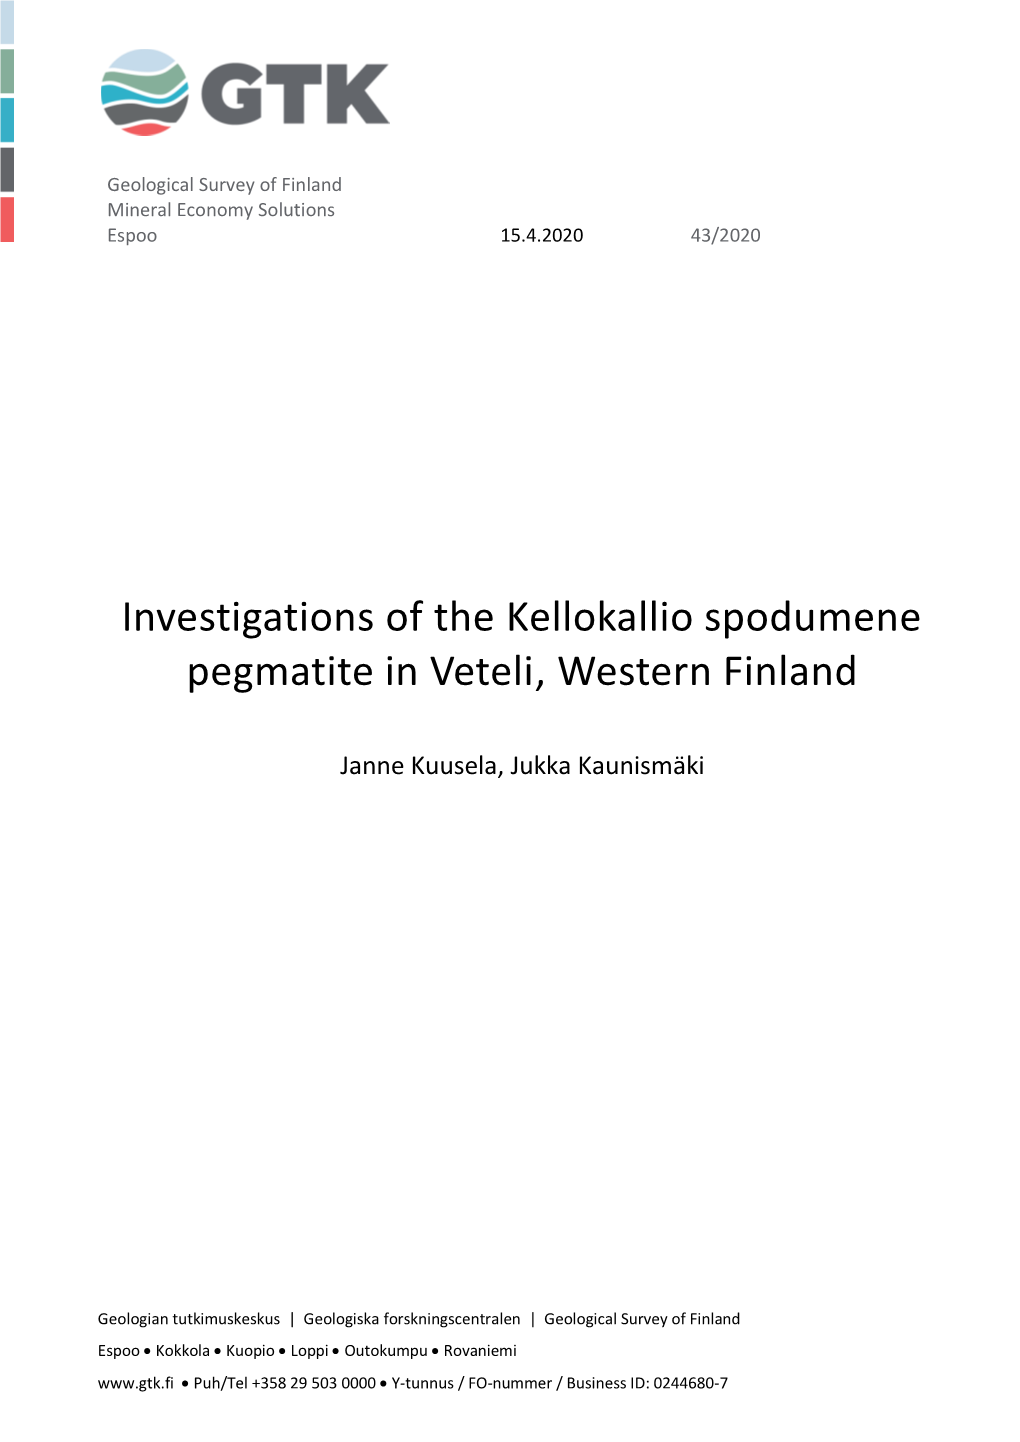 Investigations of the Kellokallio Spodumene Pegmatite in Veteli, Western Finland